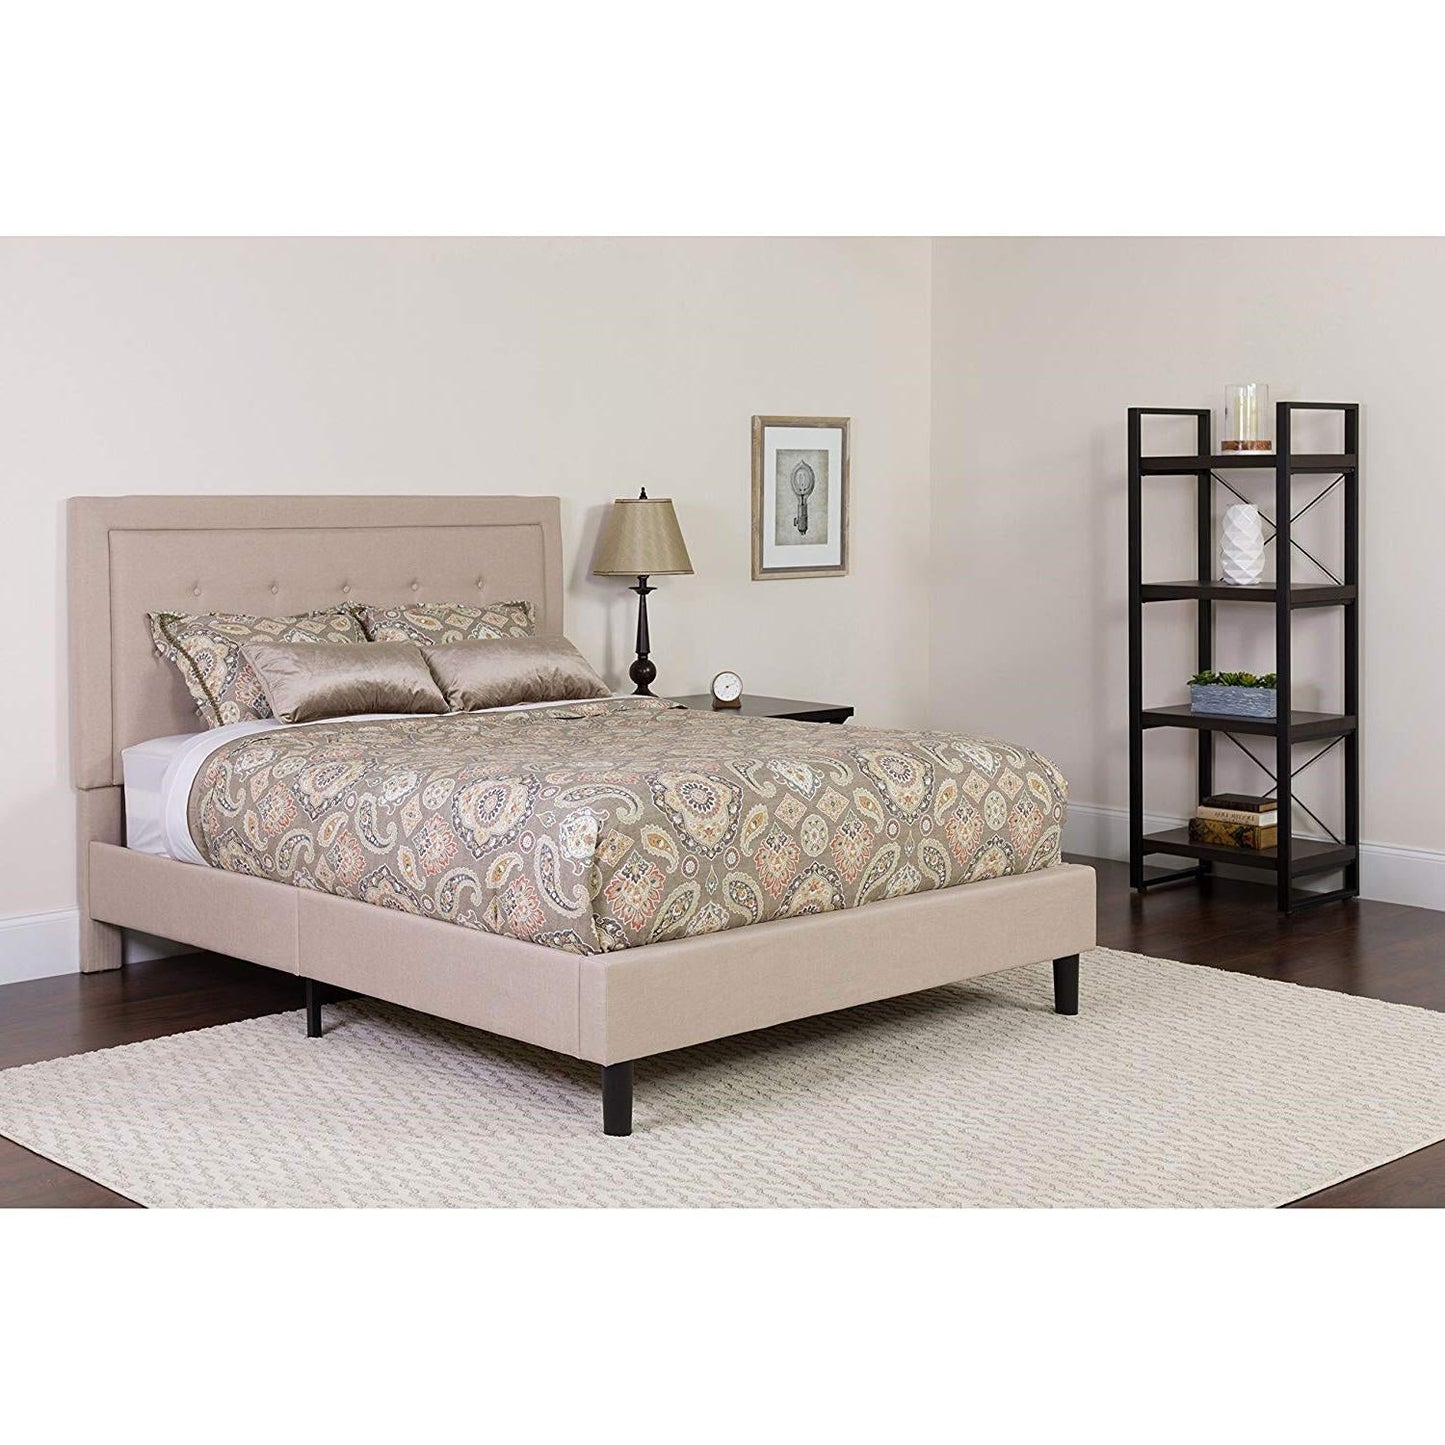 Bedroom > Bed Frames > Platform Beds - Full Beige Fabric Upholstered Platform Bed Frame With Tufted Headboard